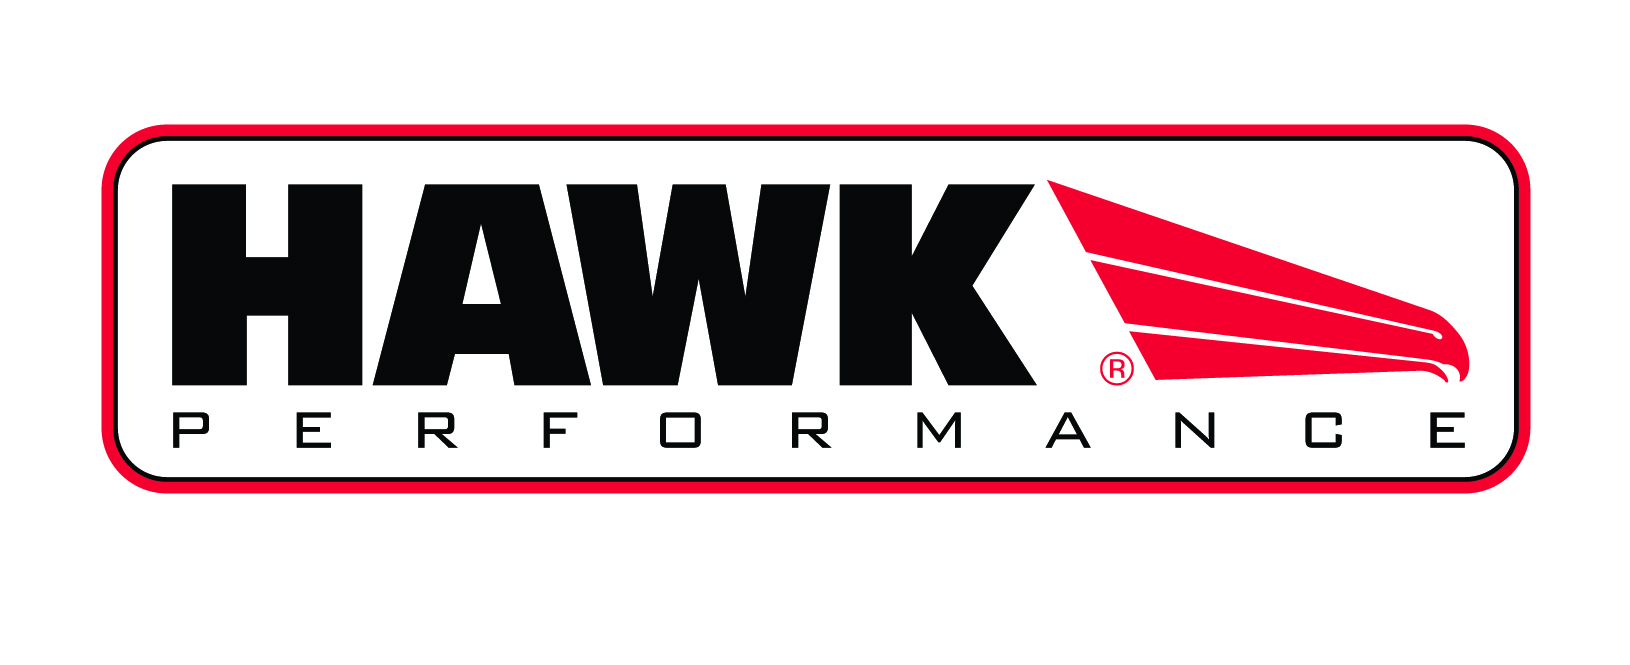 Brzdové kotouče Hawk Performance Chrysler